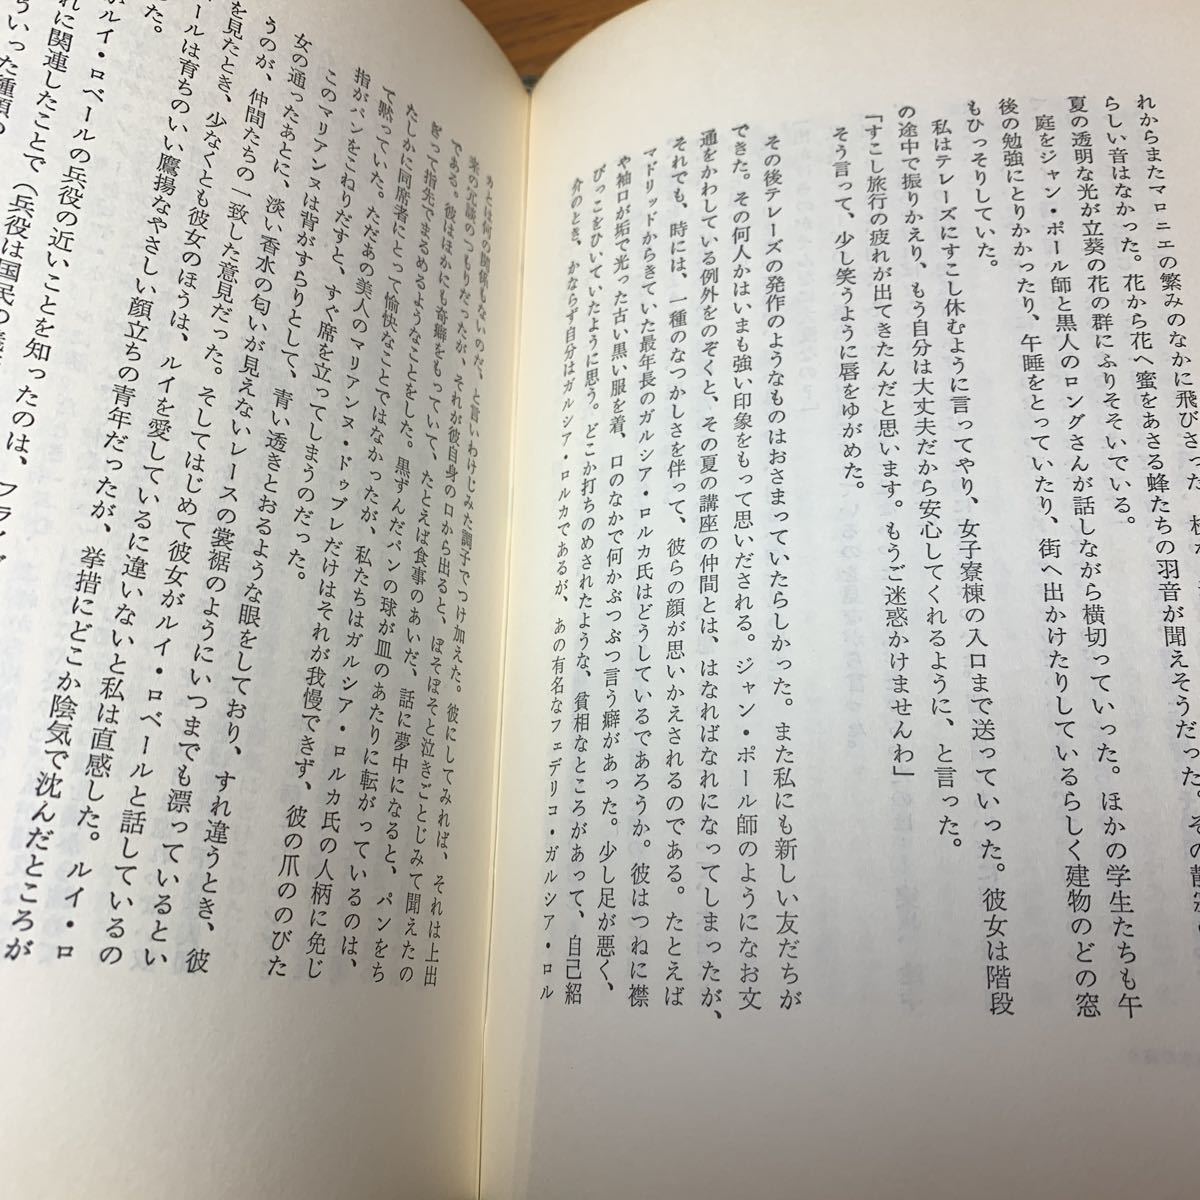 * Osaka Sakai city / получение возможно * замок ночь Tsuji Kunio 1971 год быстрое решение! старая книга старинная книга *